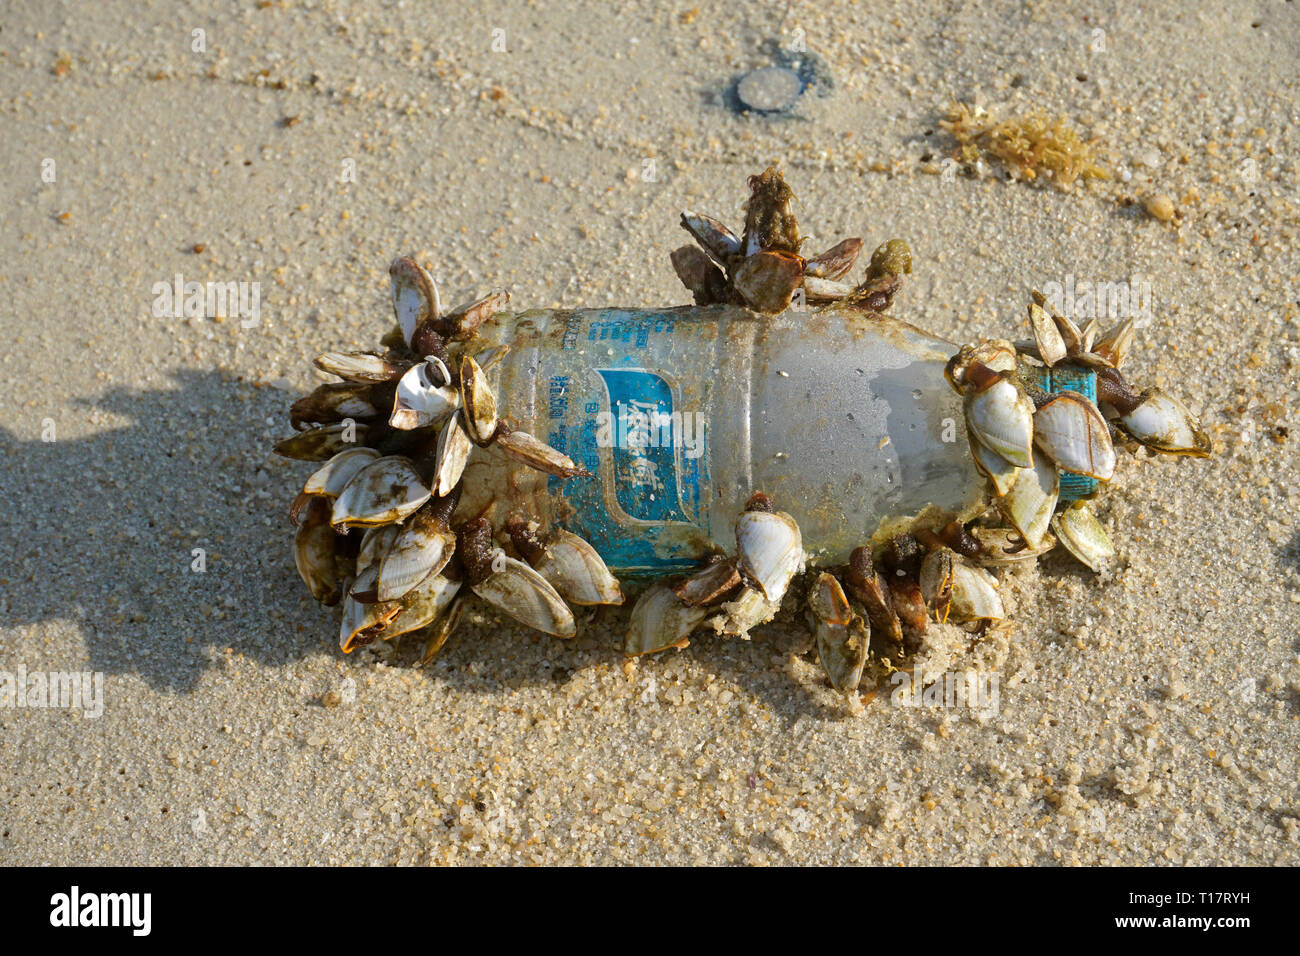 Gans Seepocken (Pedunculata") auf eine Plastikflasche, gewaschen am Lamai Beach, Koh Samui, Golf von Thailand, Thailand Stockfoto